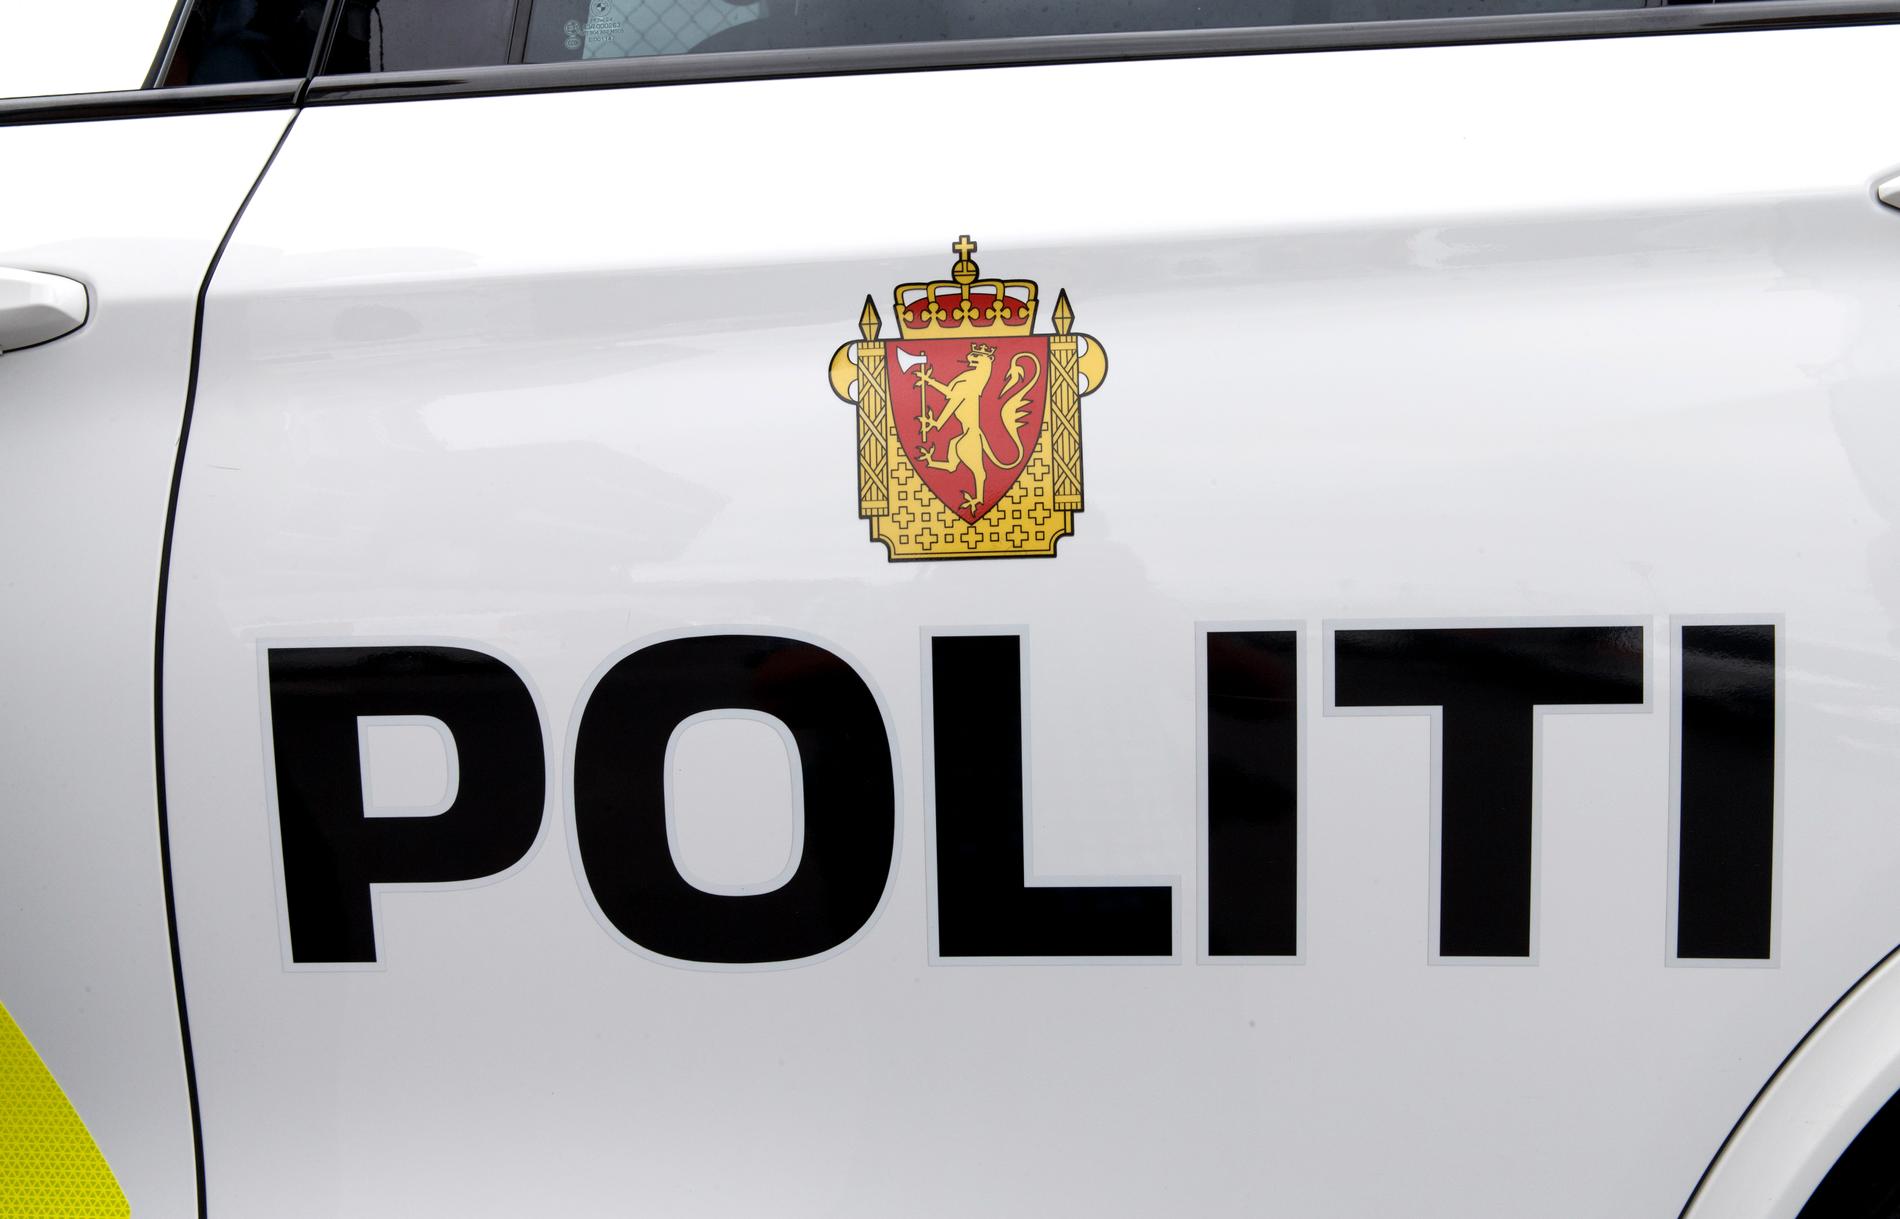 Den svenske mannen misstänks för två mord, ett i Oslo och ytterligare ett i Belgien.